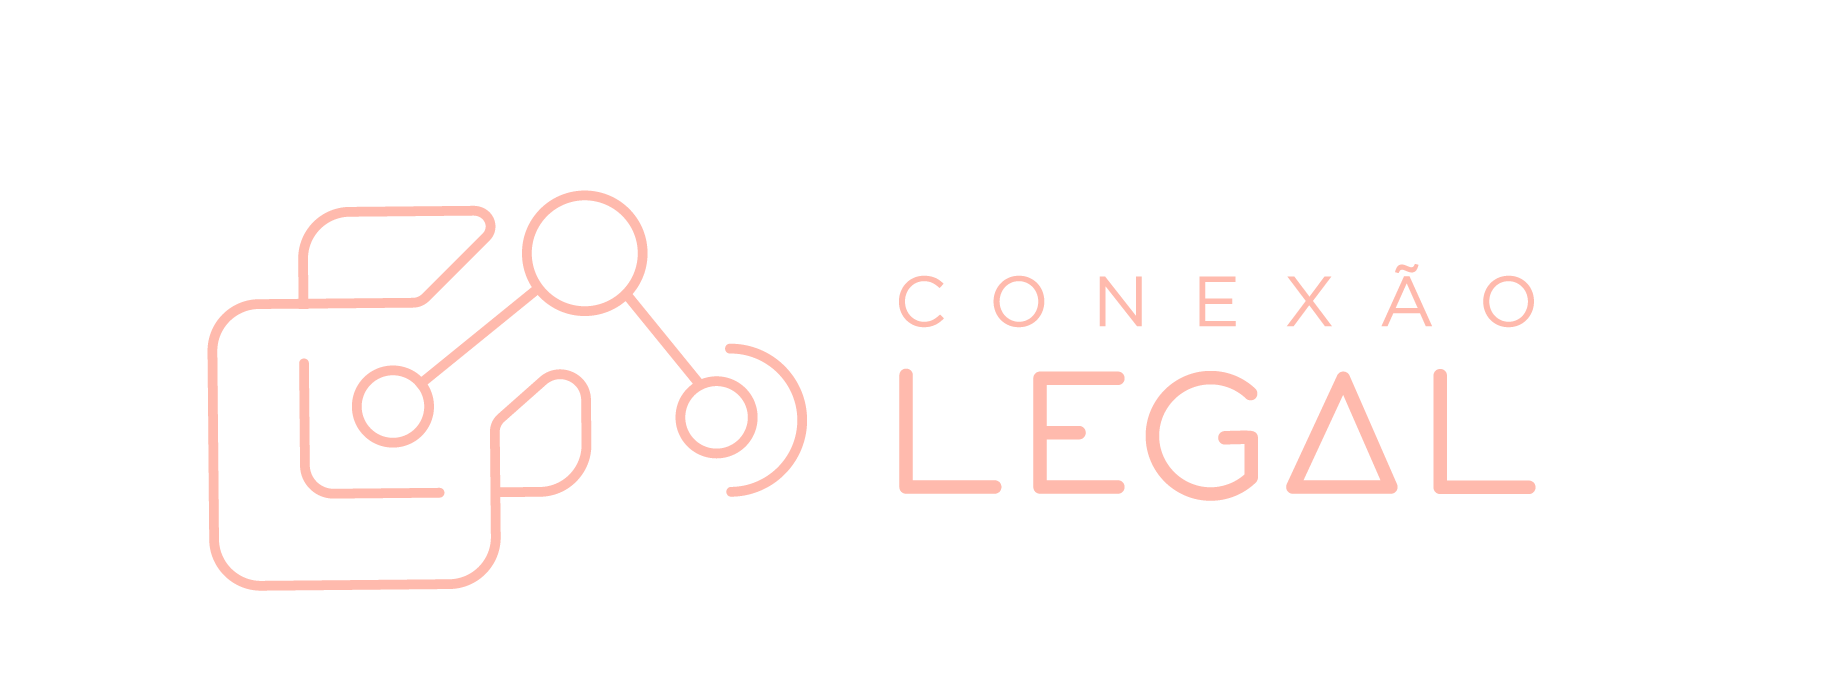 Conexao-legal_LOGO_FINAL_Prancheta-1-copia-24.png